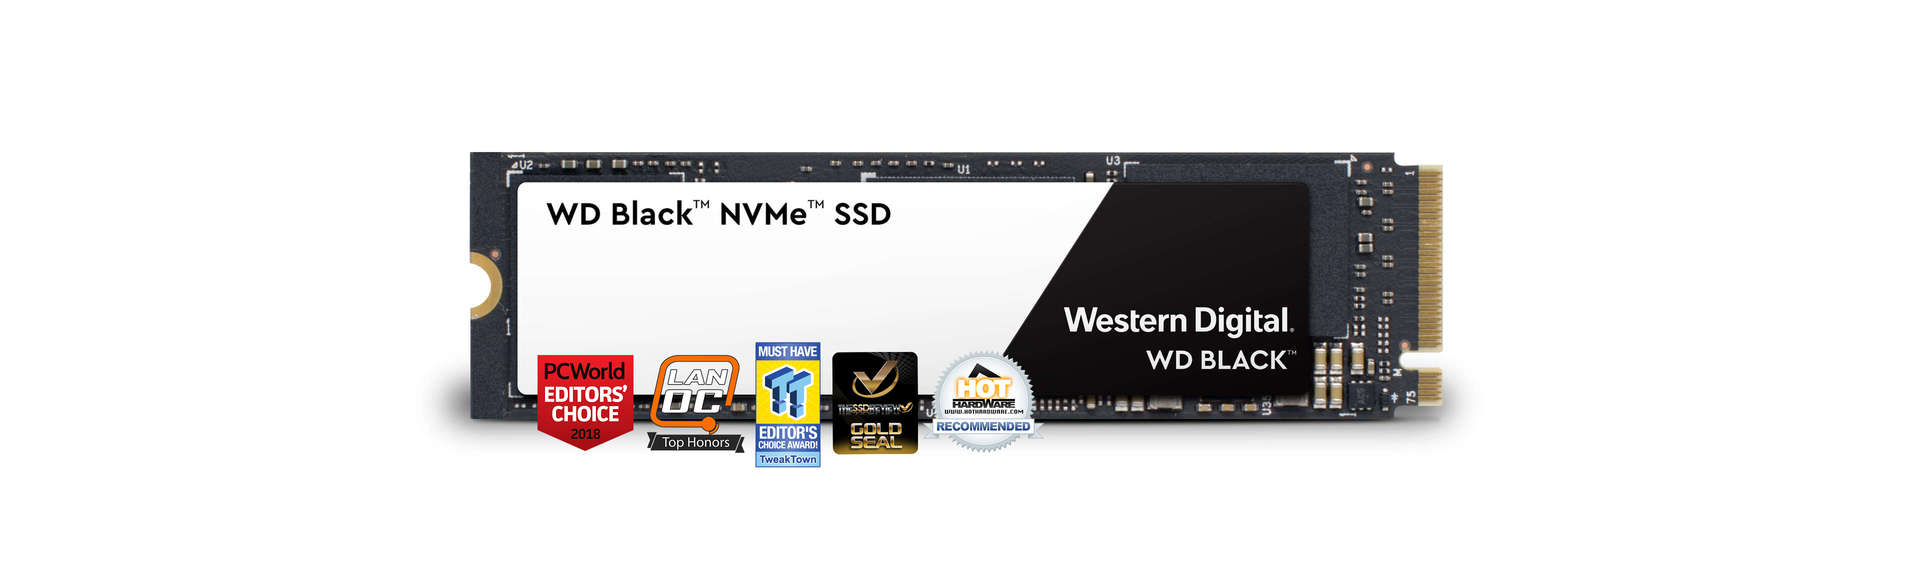 WD Black NVMe SSD (2018)